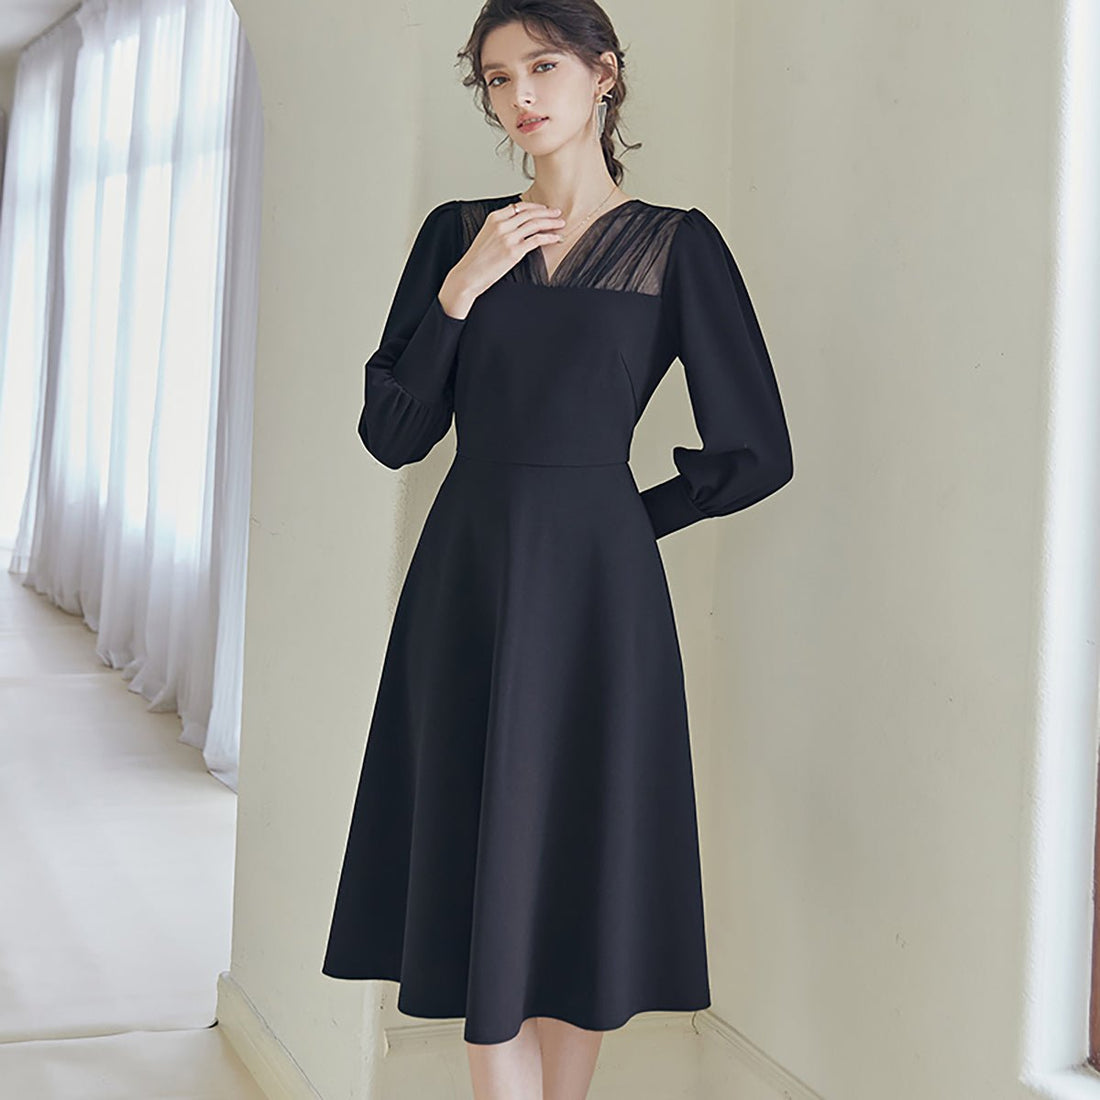 Mesh Detail Full-Sleeved Black Dress - 0cm